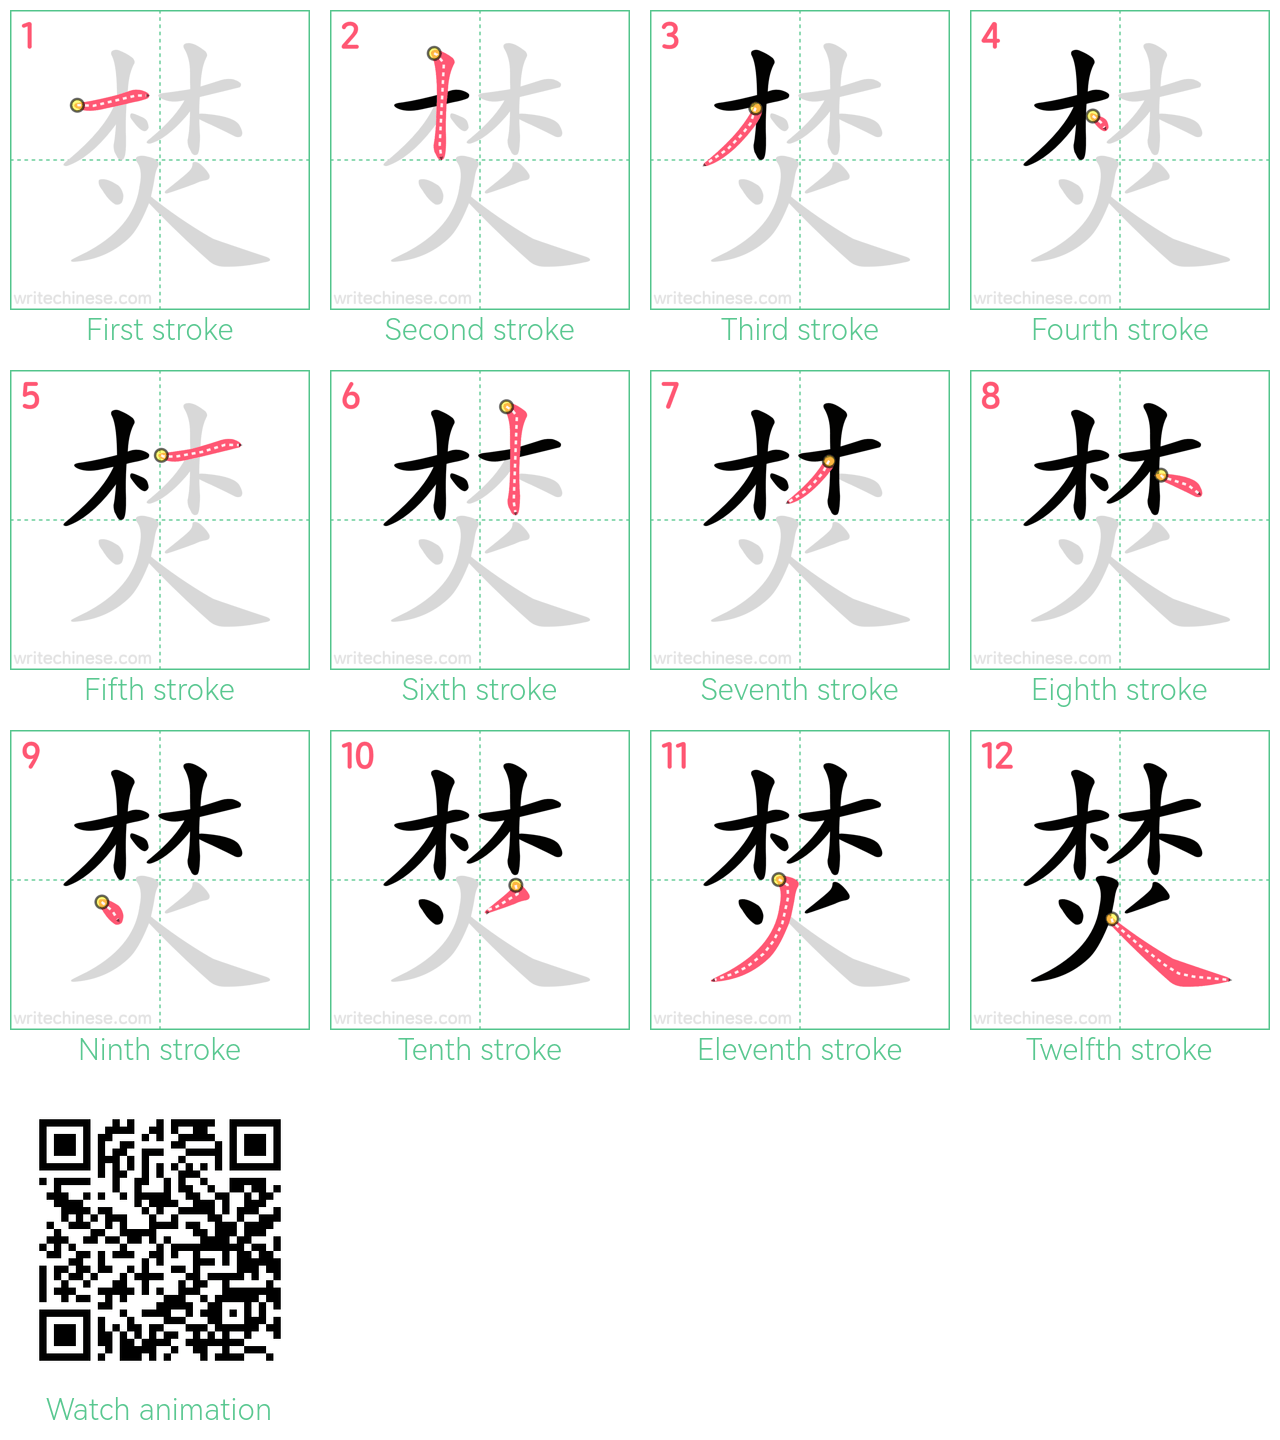 焚 step-by-step stroke order diagrams